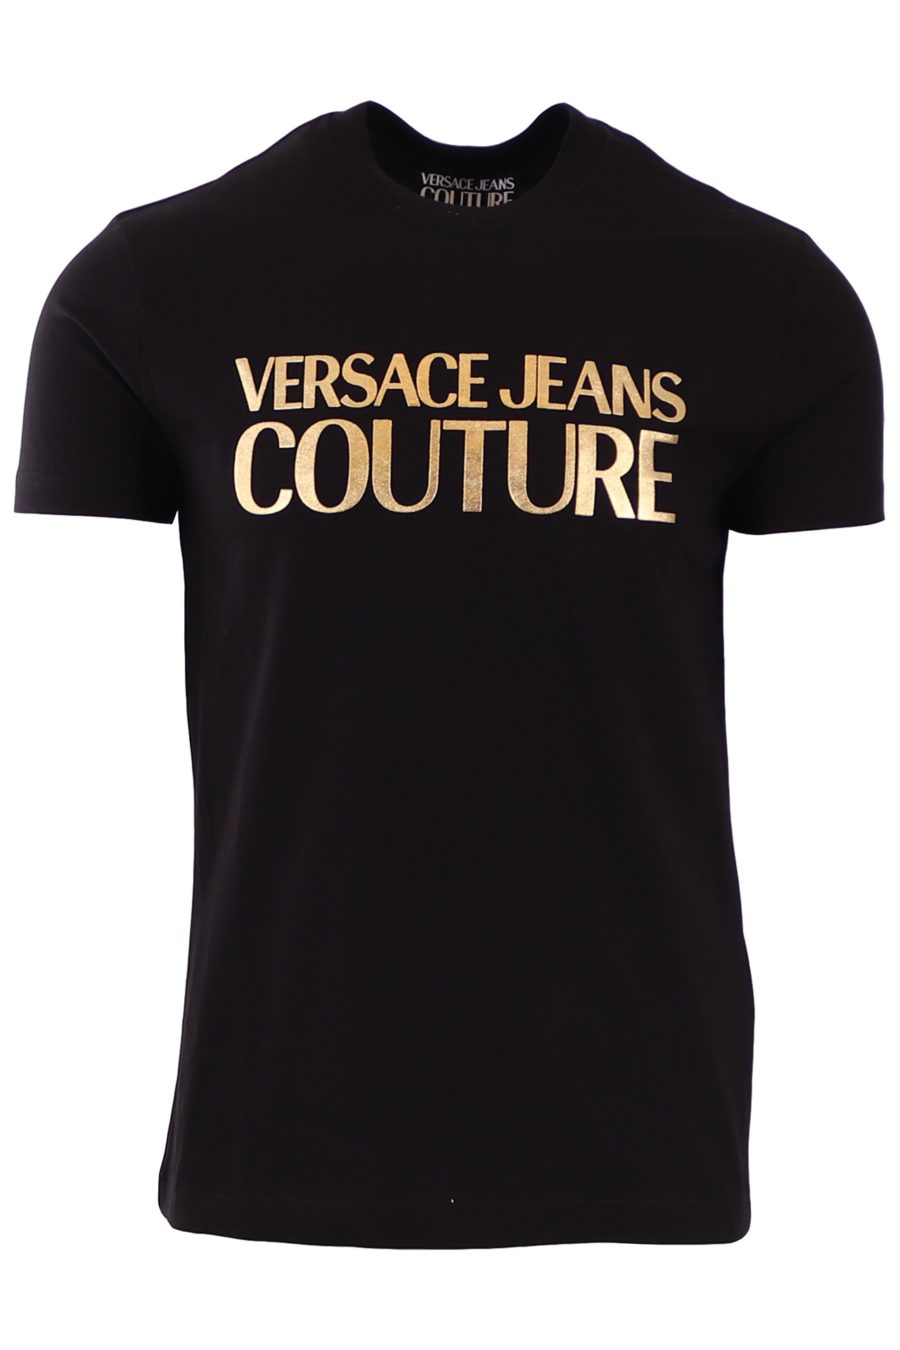 T-shirt Versace Jeans Couture preta com logótipo escrito a ouro - 1e8f54979fcbfed4a587966e5a06ae98b2b1c3fe